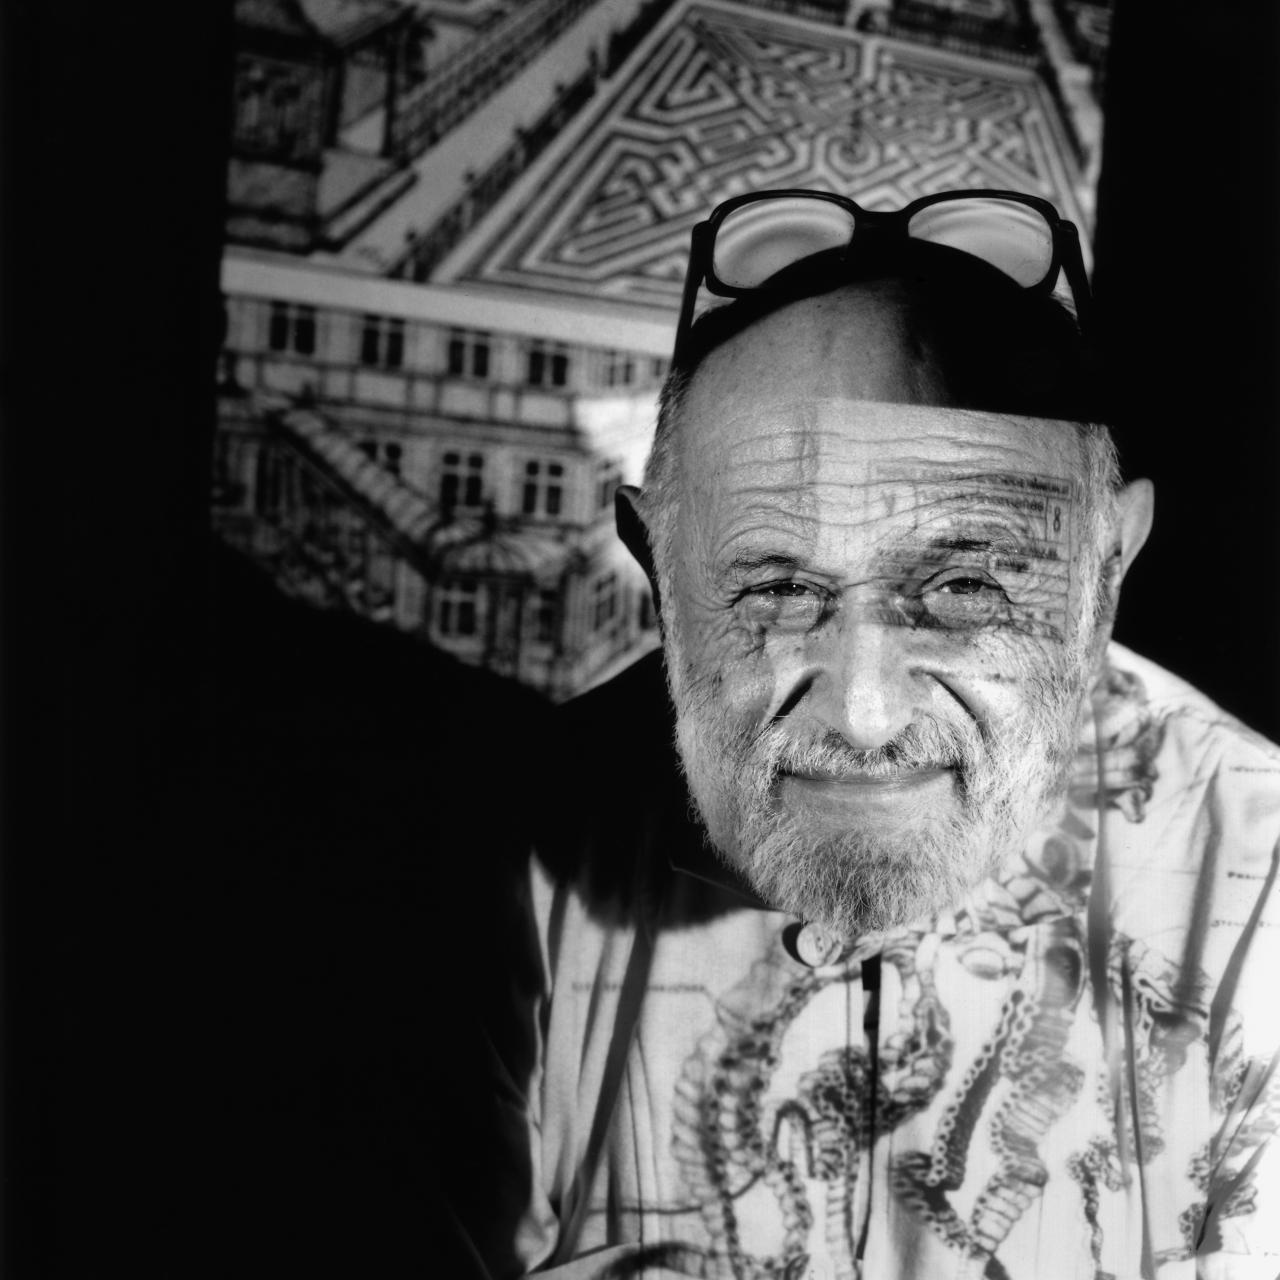 black-and-white photograph illustrates portrait of Vilém Flusser